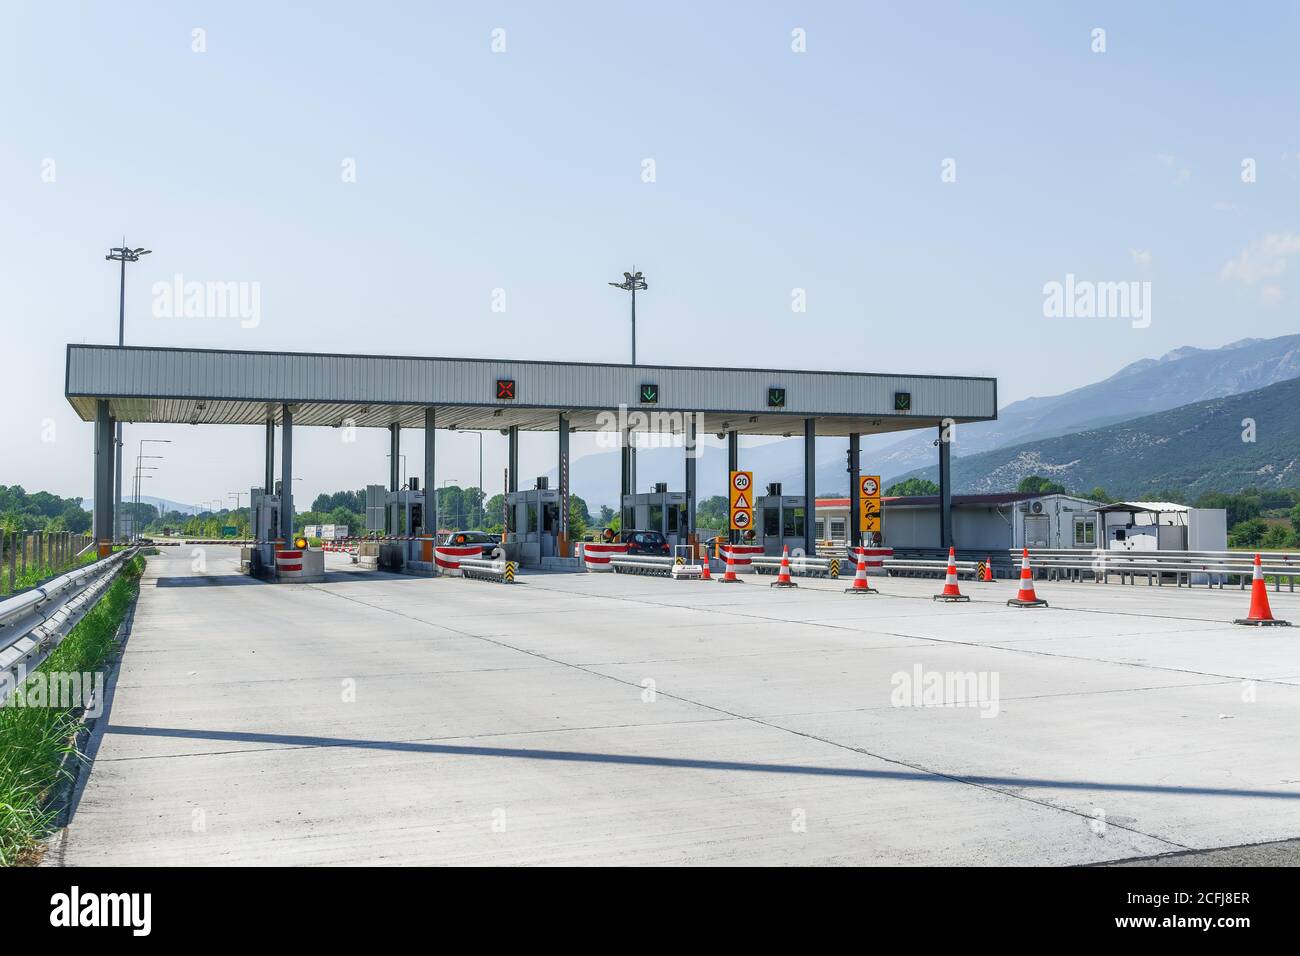 Autobahnmautstationen mit gebührenpflichtigen Ständen. Griechische Straße, wo Autofahrer zahlen, um Tore für Abschnitte Egnatia Autobahn passieren, mit E-Pass-Option. Stockfoto